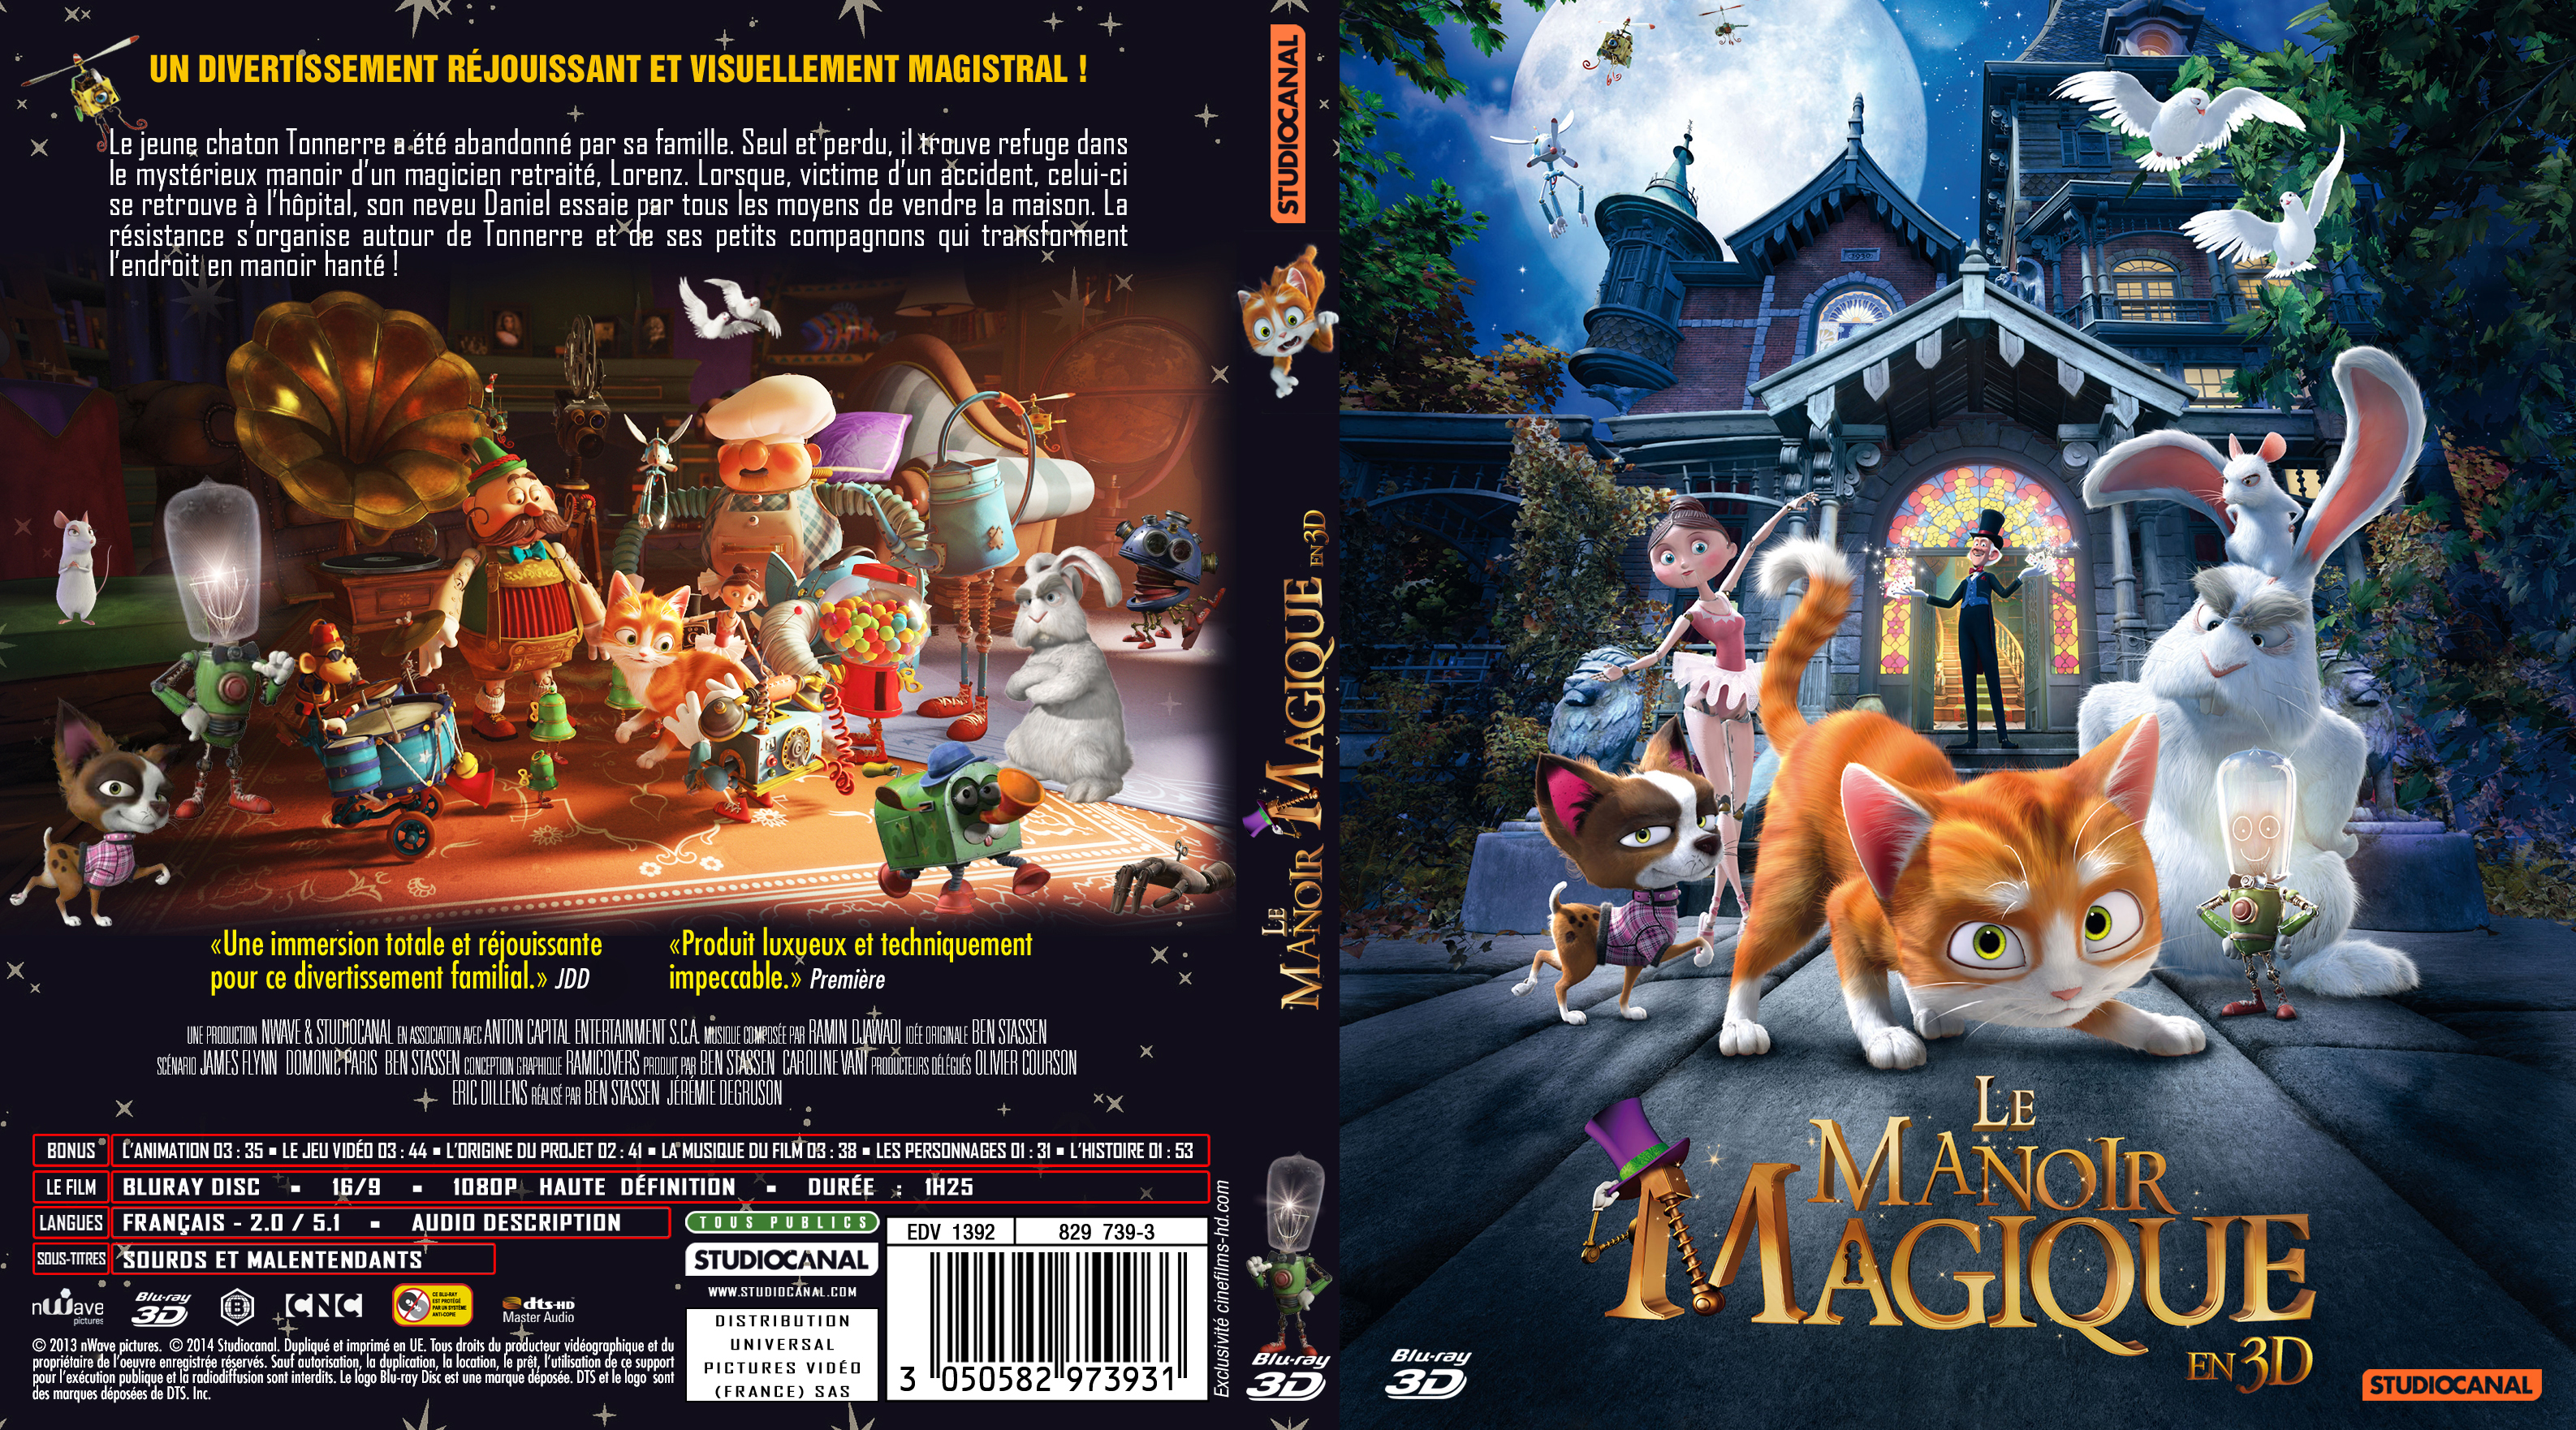 Jaquette DVD Le manoir magique 3D custom (Canadienne)